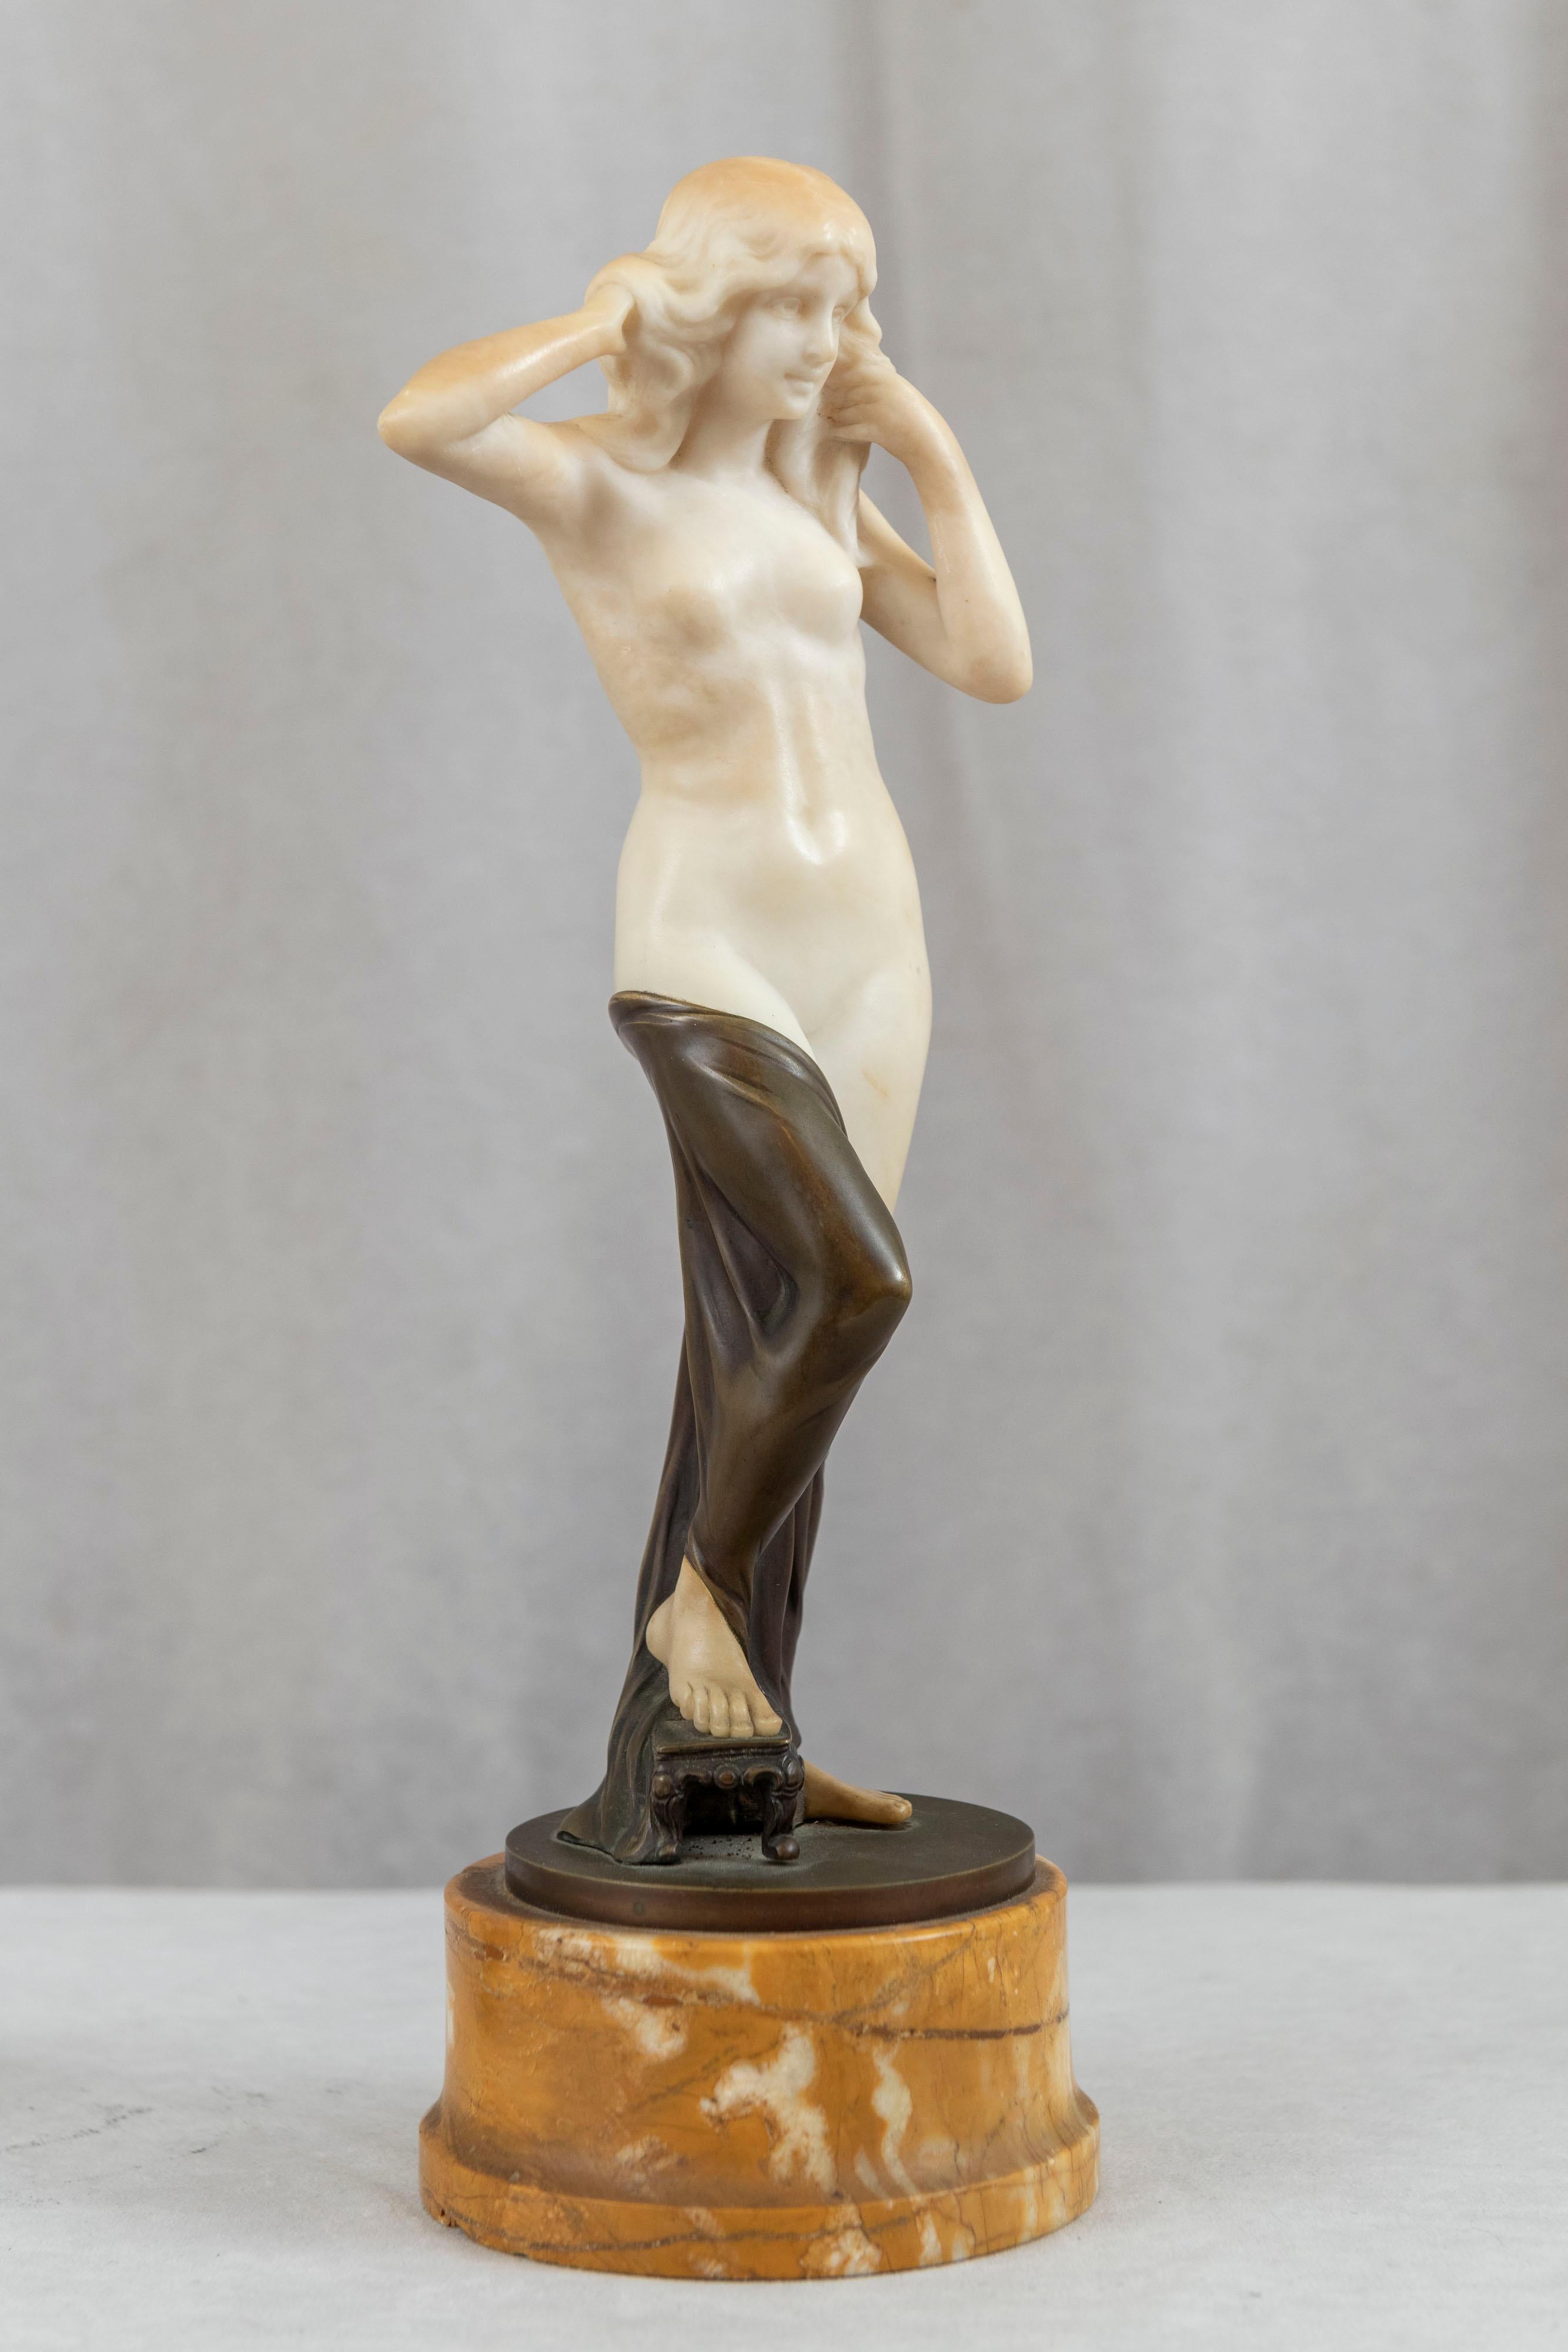 Cette jeune fille nue et sexy présente deux médiums utilisés pour créer une sculpture, le bronze coulé et l'albâtre sculpté à la main. L'albâtre blanc donne vie à la statue et constitue un bel ajout à toute statue de femme. La belle nue a des